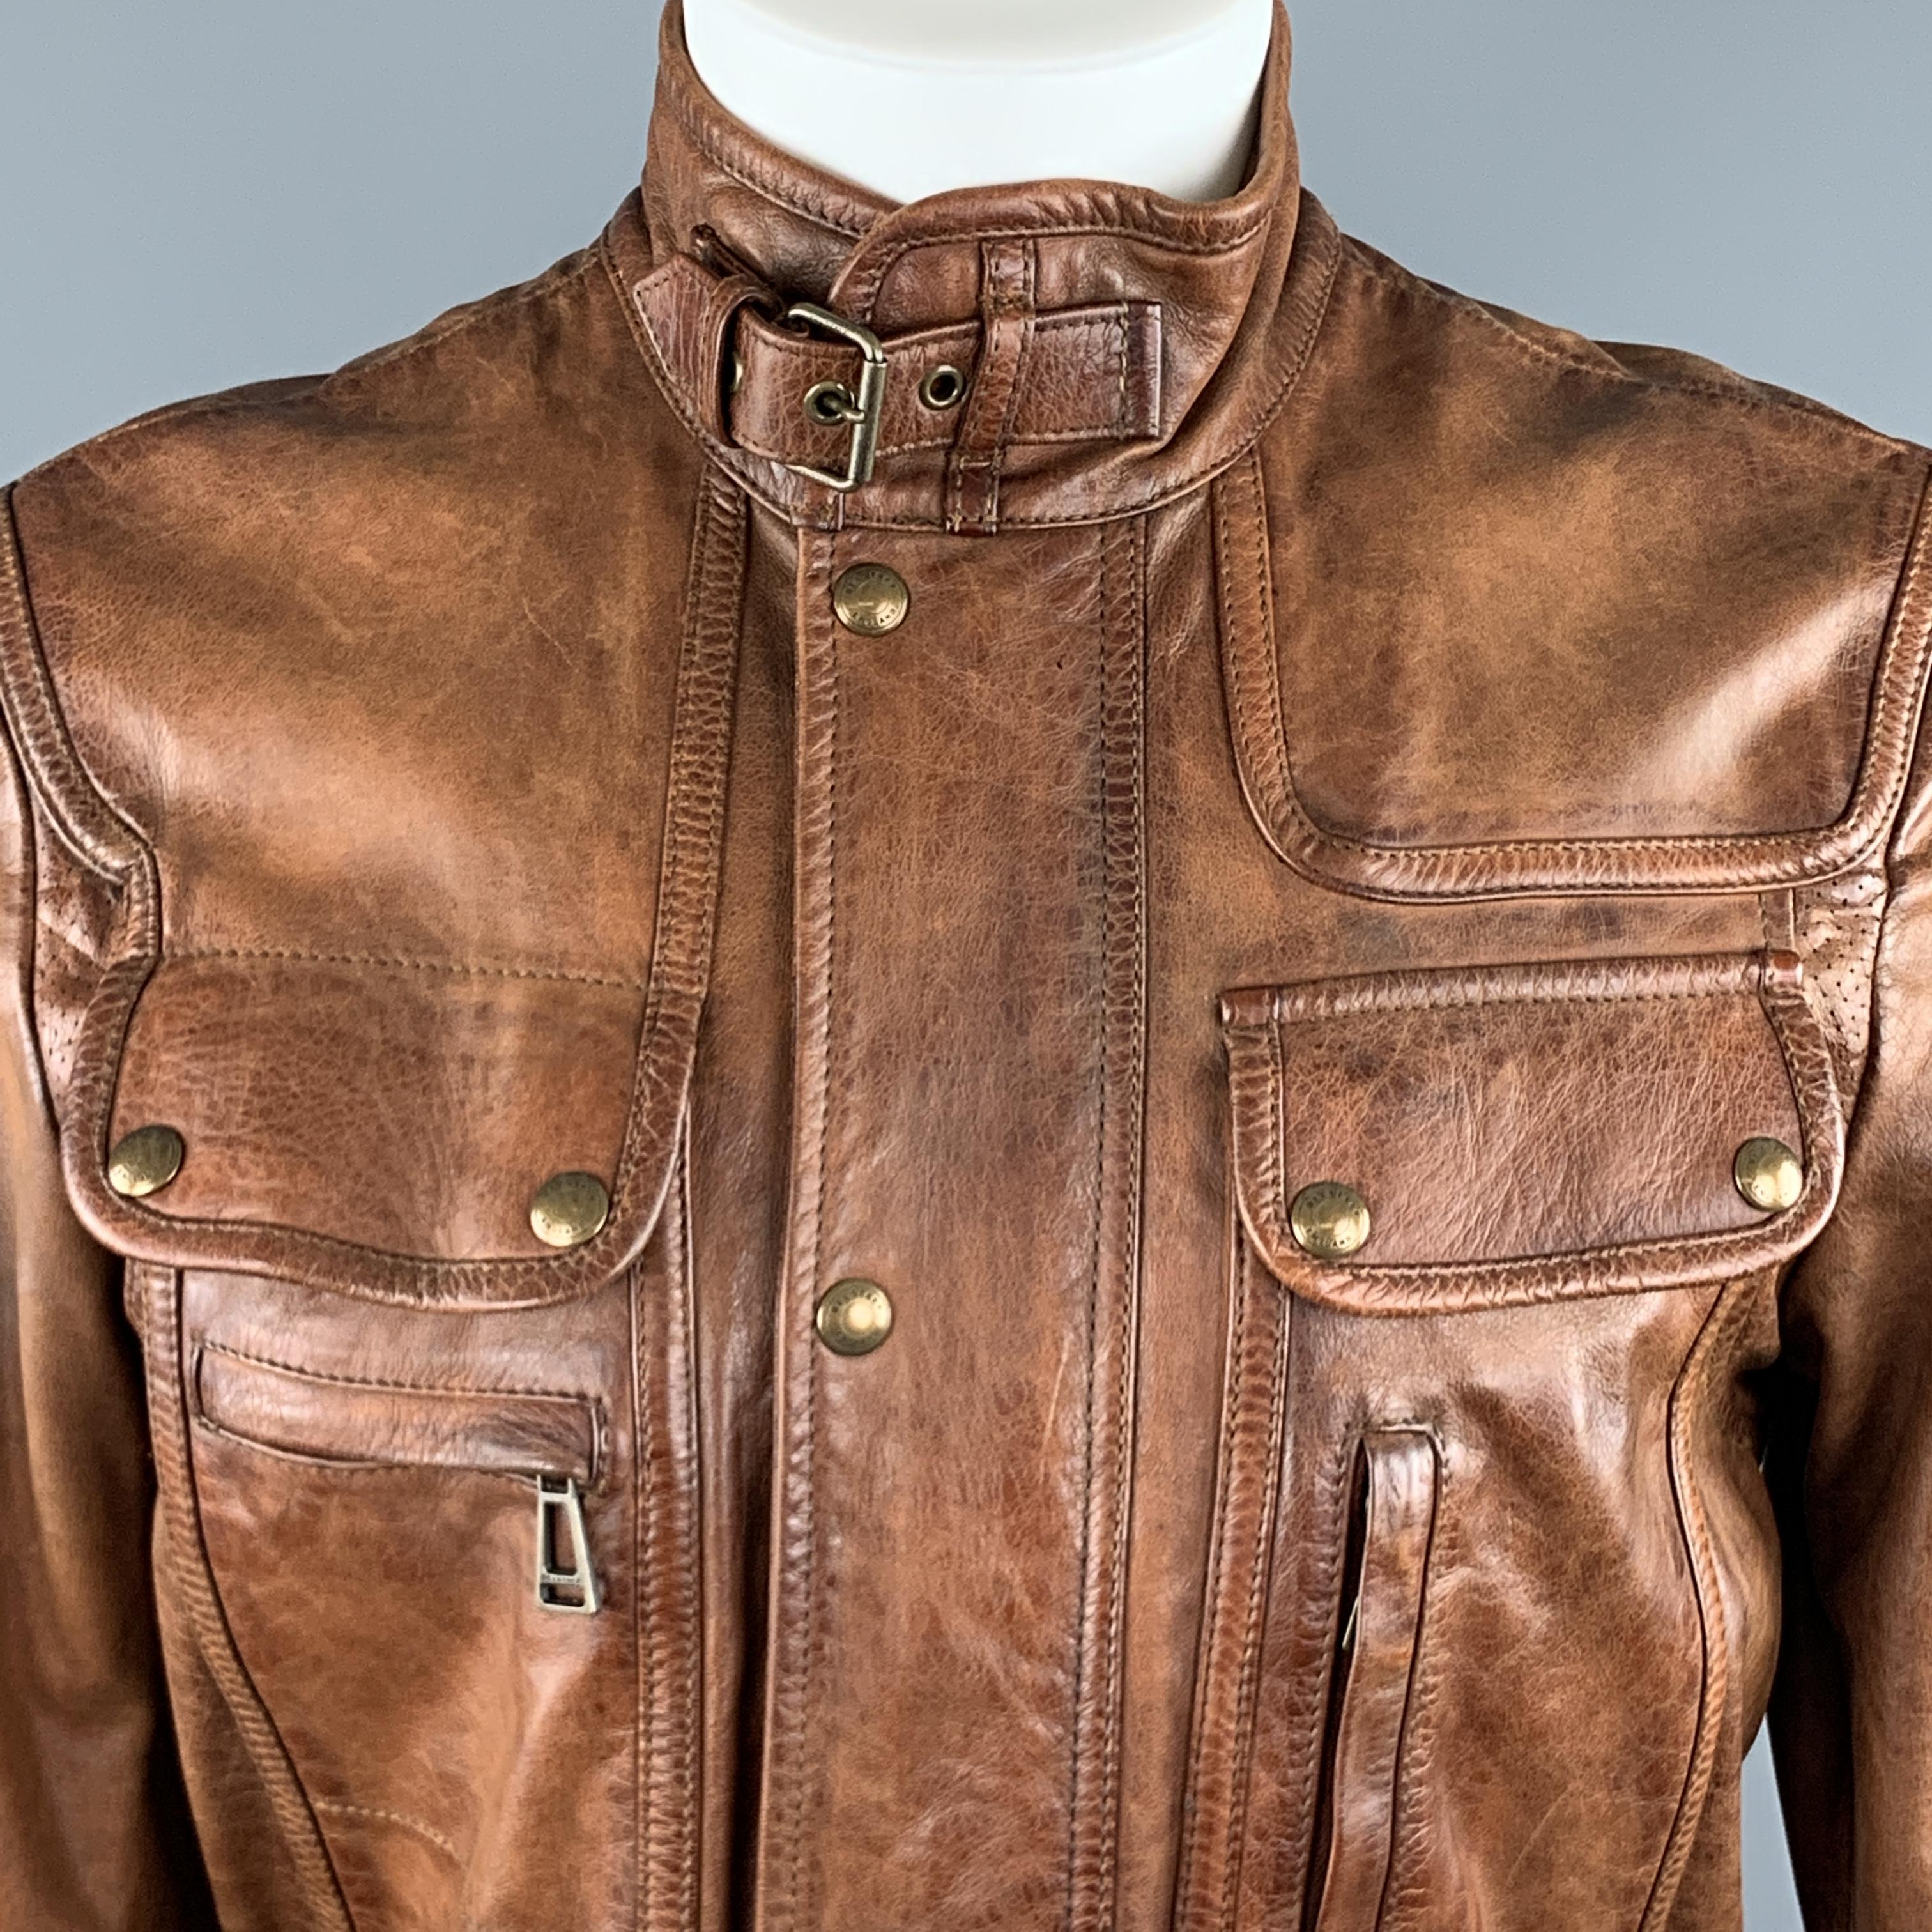 Belstaff Leather Jacket - 3 For Sale on 1stDibs